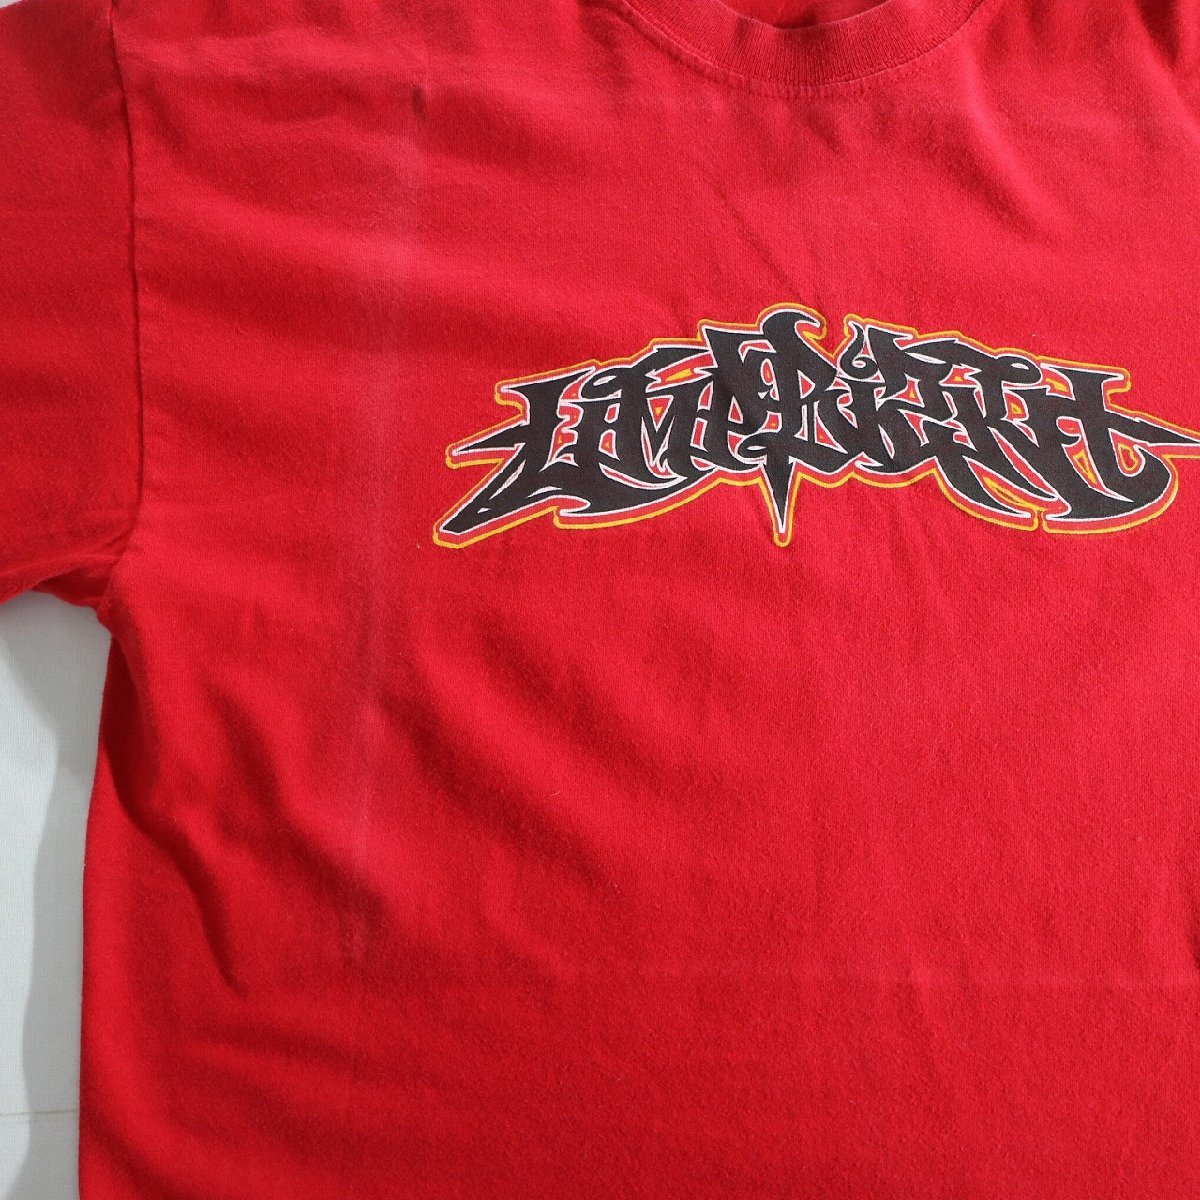 【SALE】F□00年代 Limp Bizkit リンプビズキット バンド プリント Tシャツ レッド 赤色 (Sサイズ相当) 中古 古着 k7237_画像3